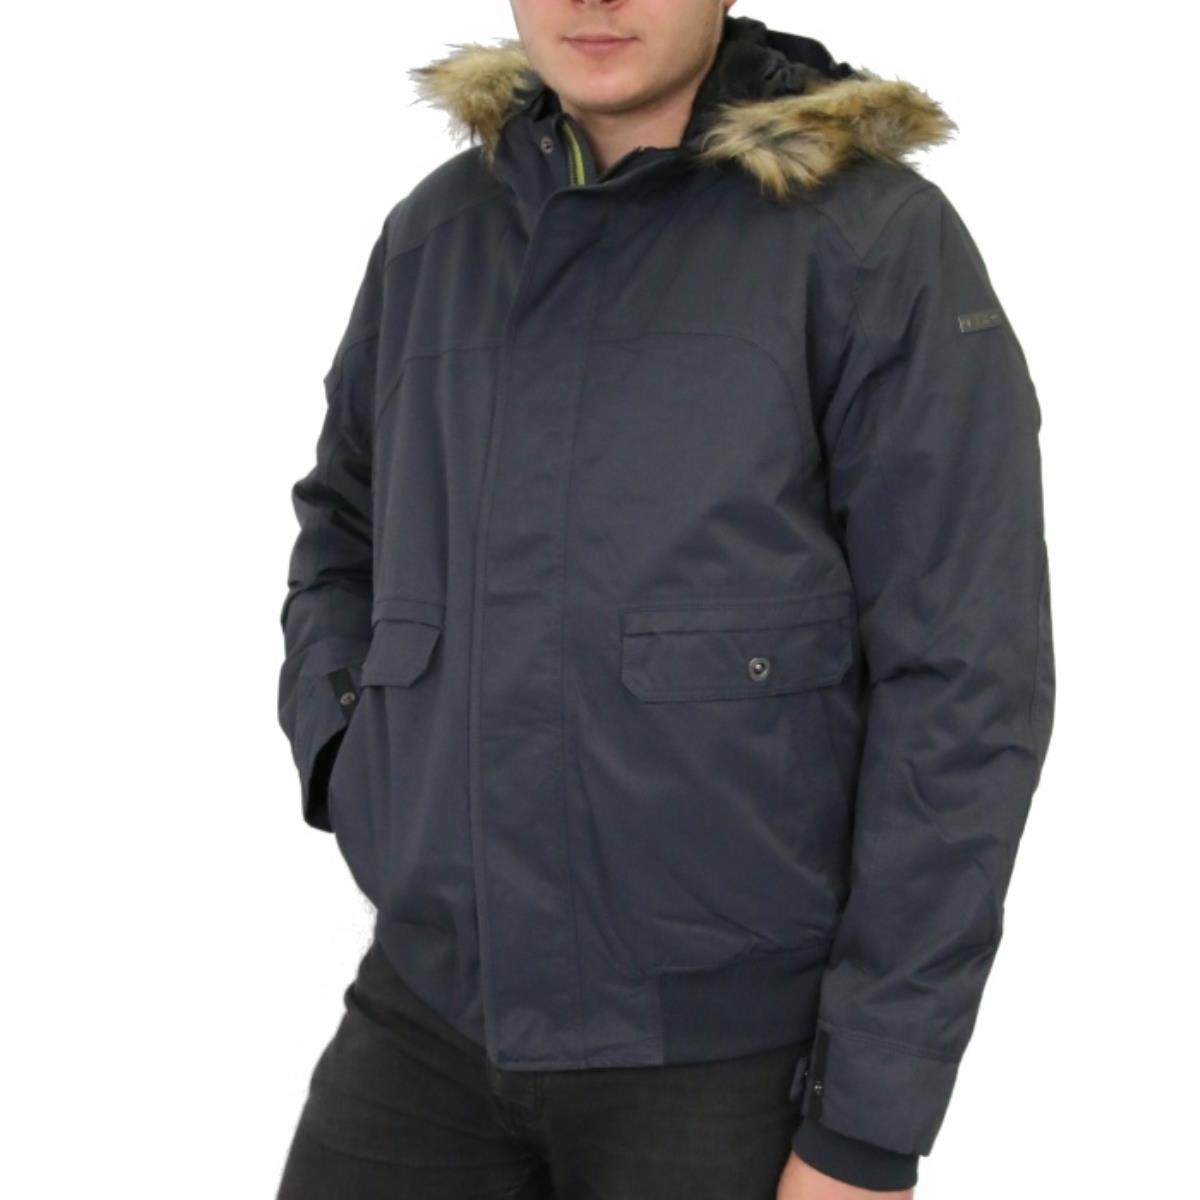 Куртка Man jacket fix hood (3Z25047) CMP куртка женская зимняя био пух 300